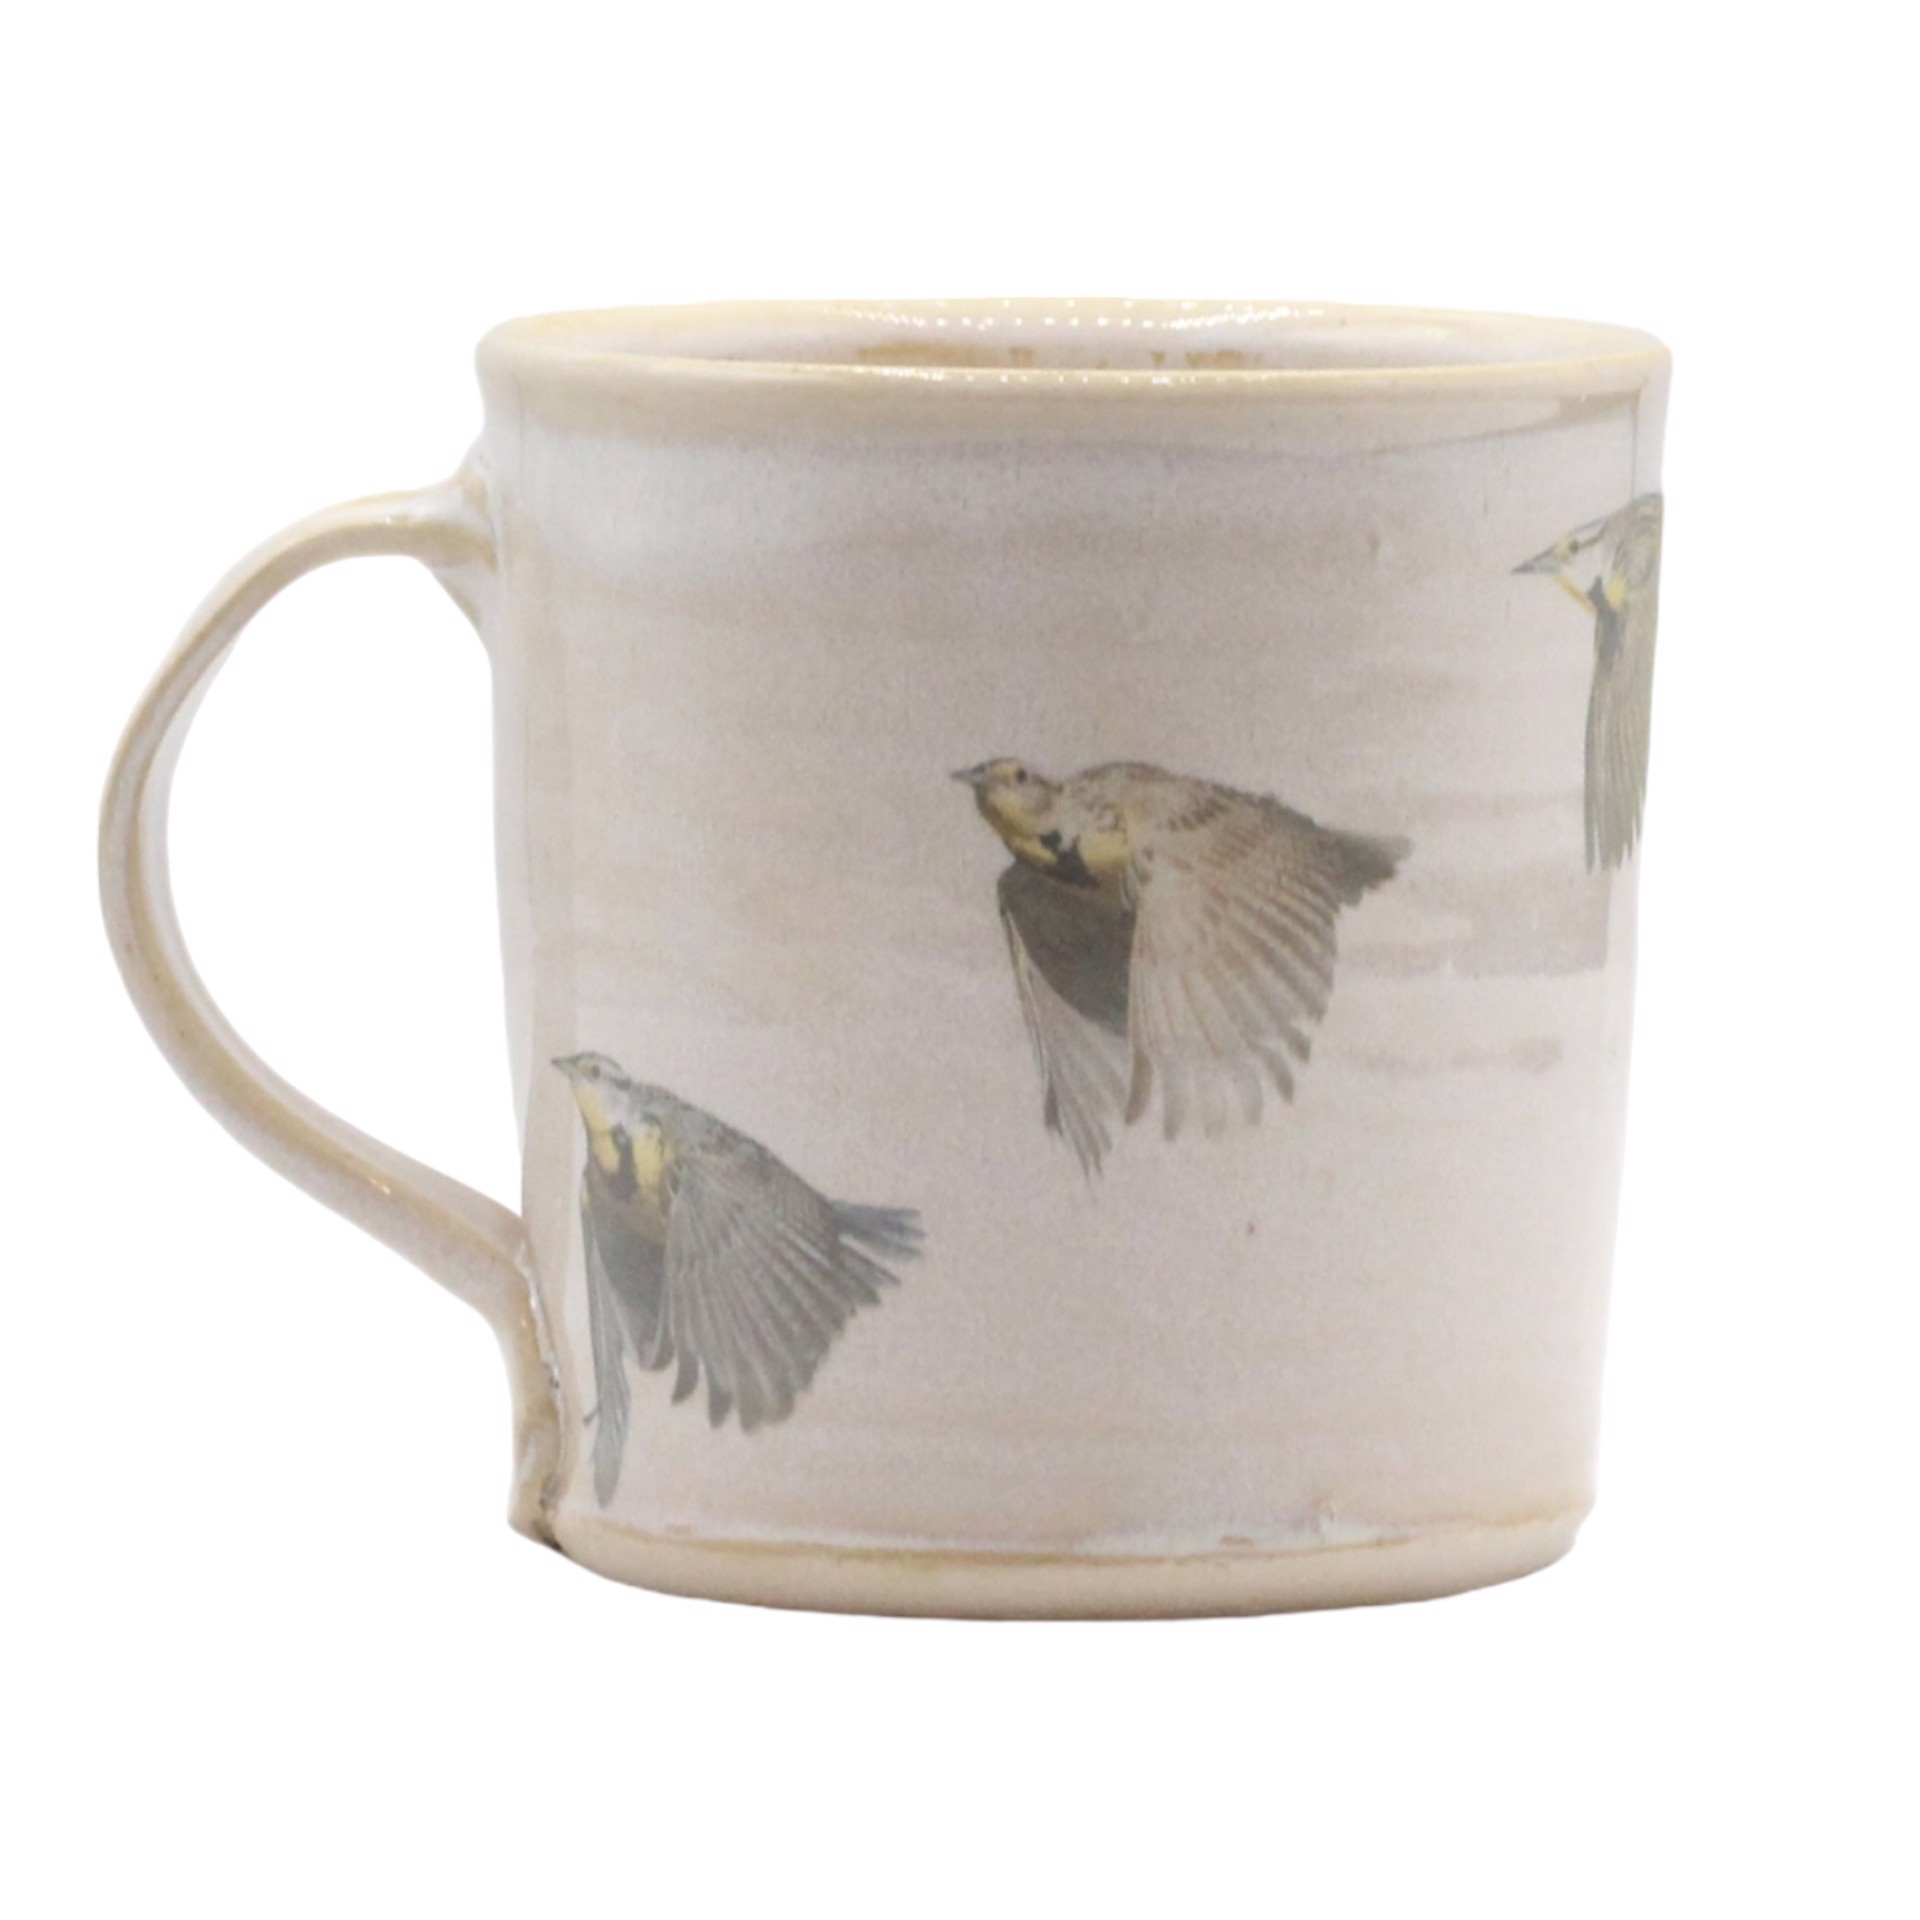 Meadowlark in Flight Mug by Stephen Mullins